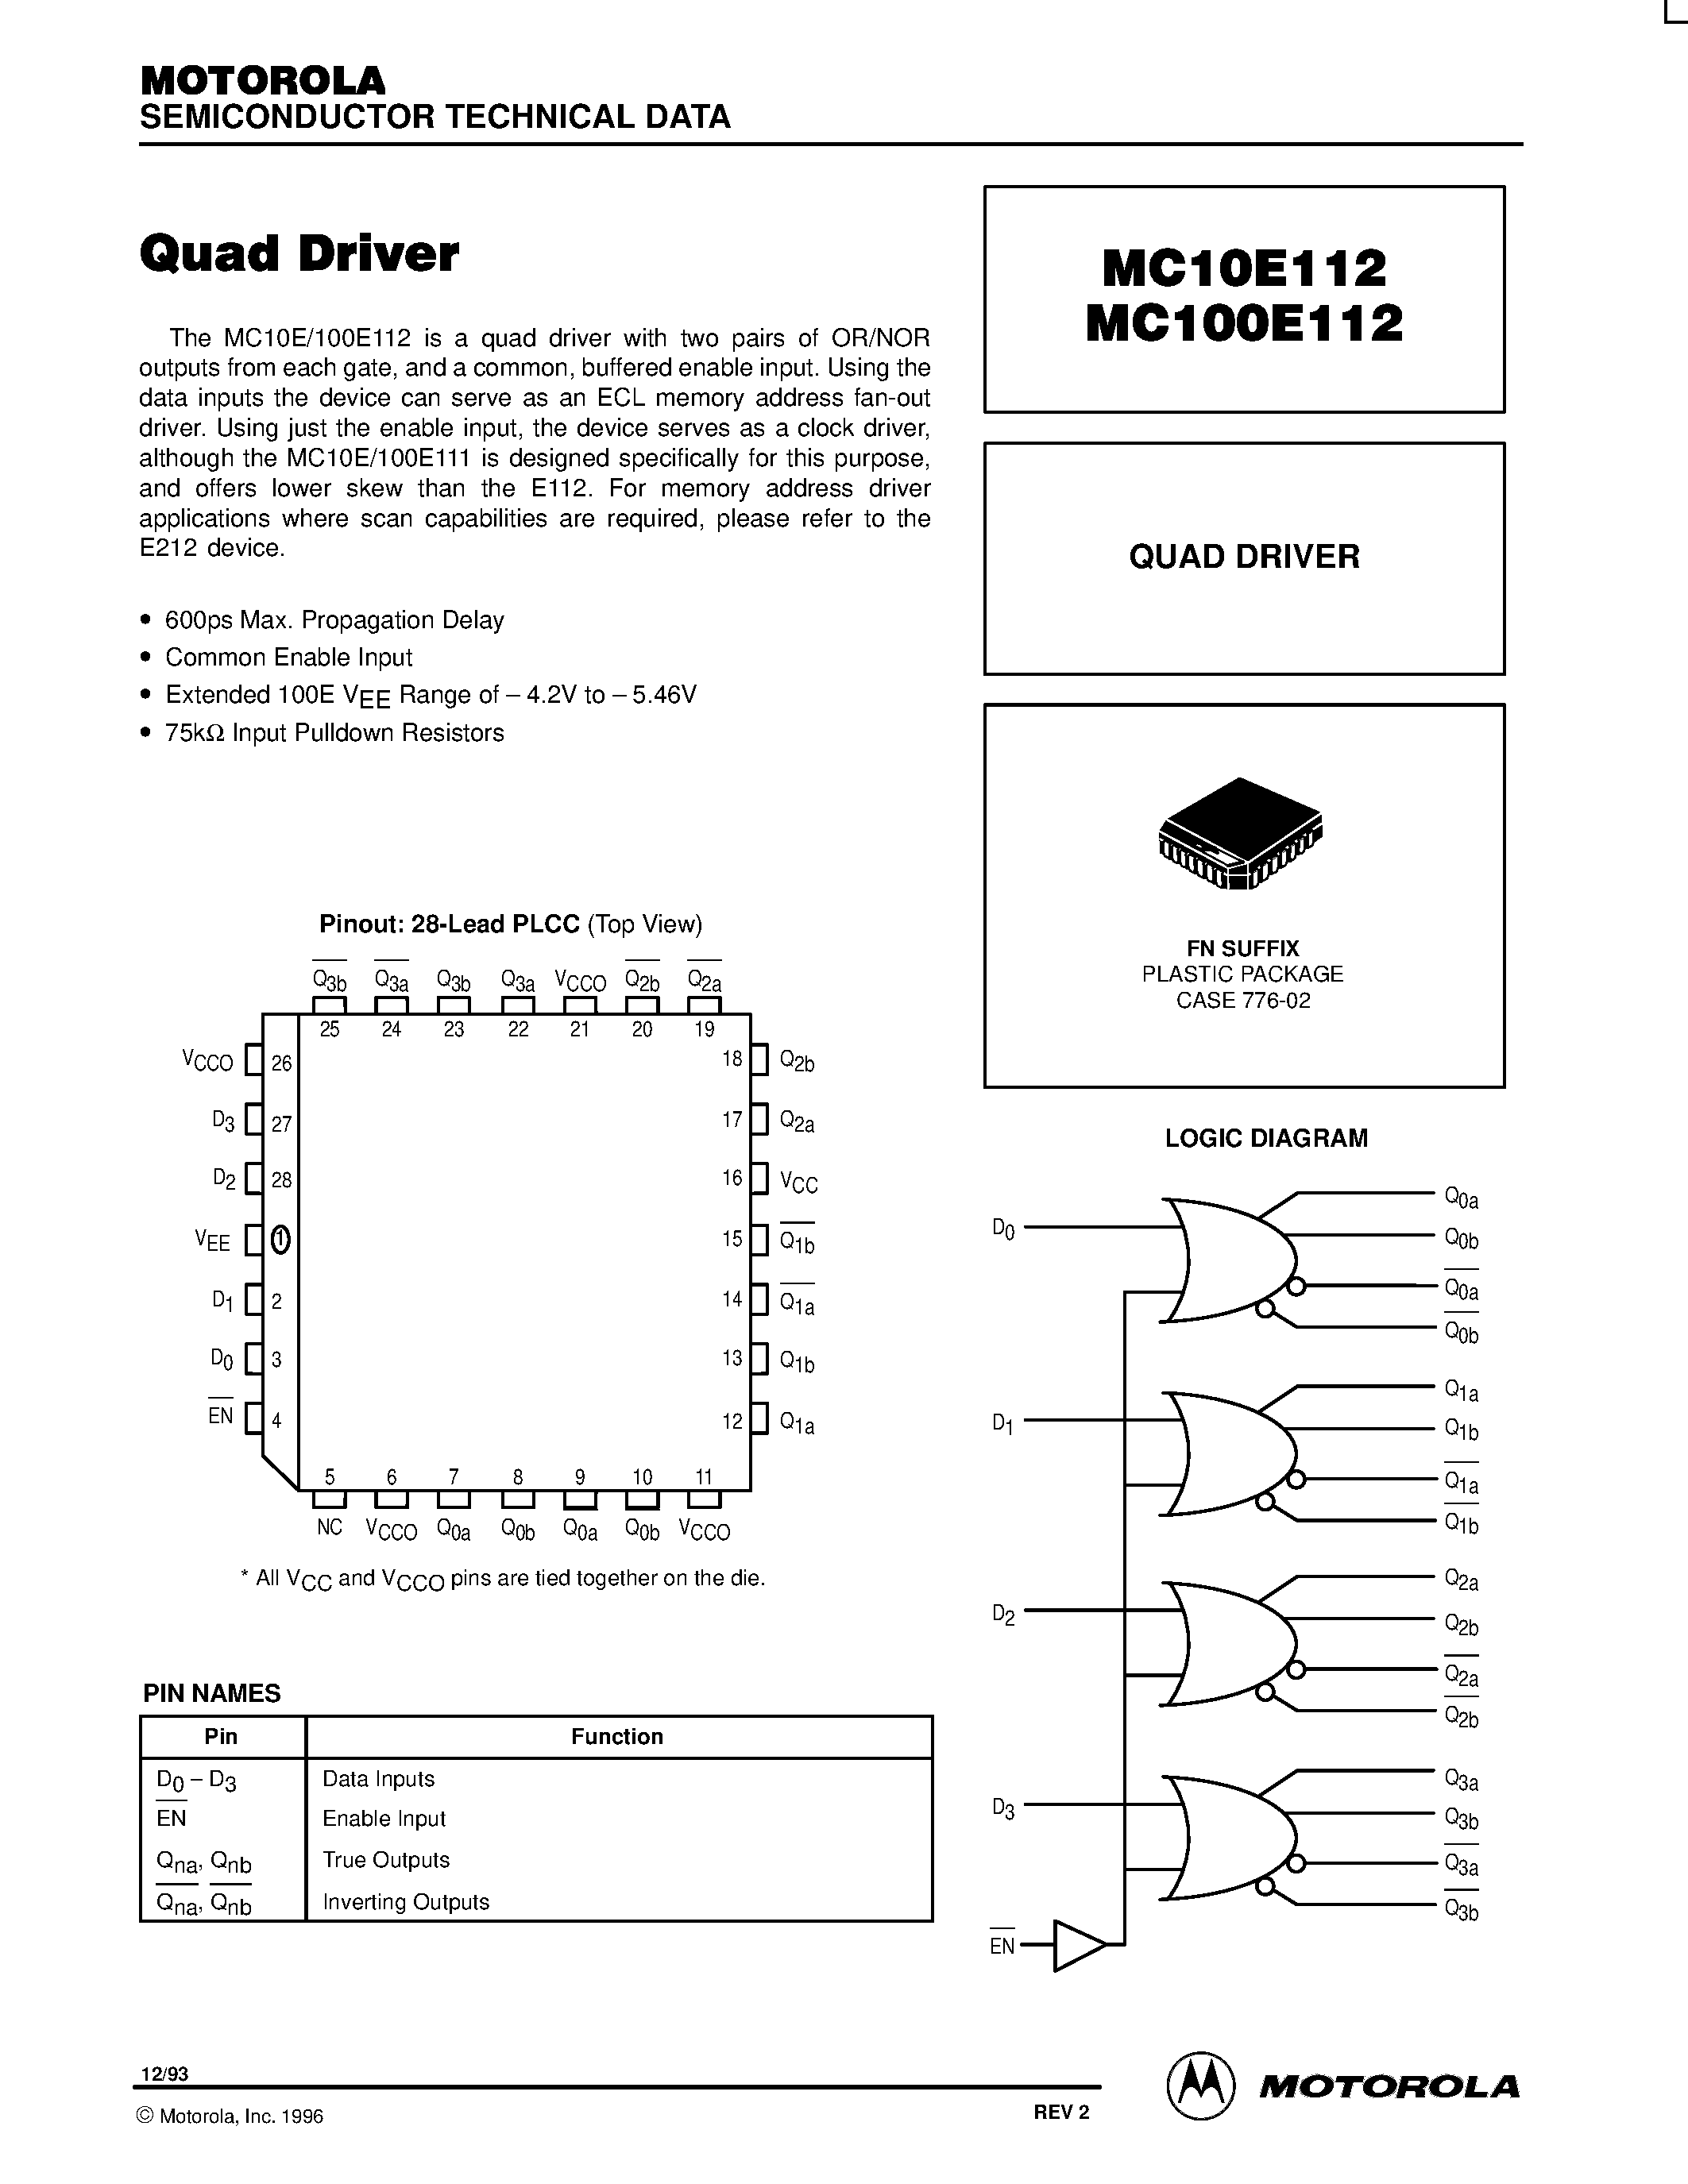 Даташит MC100E112FN - QUAD DRIVER страница 1